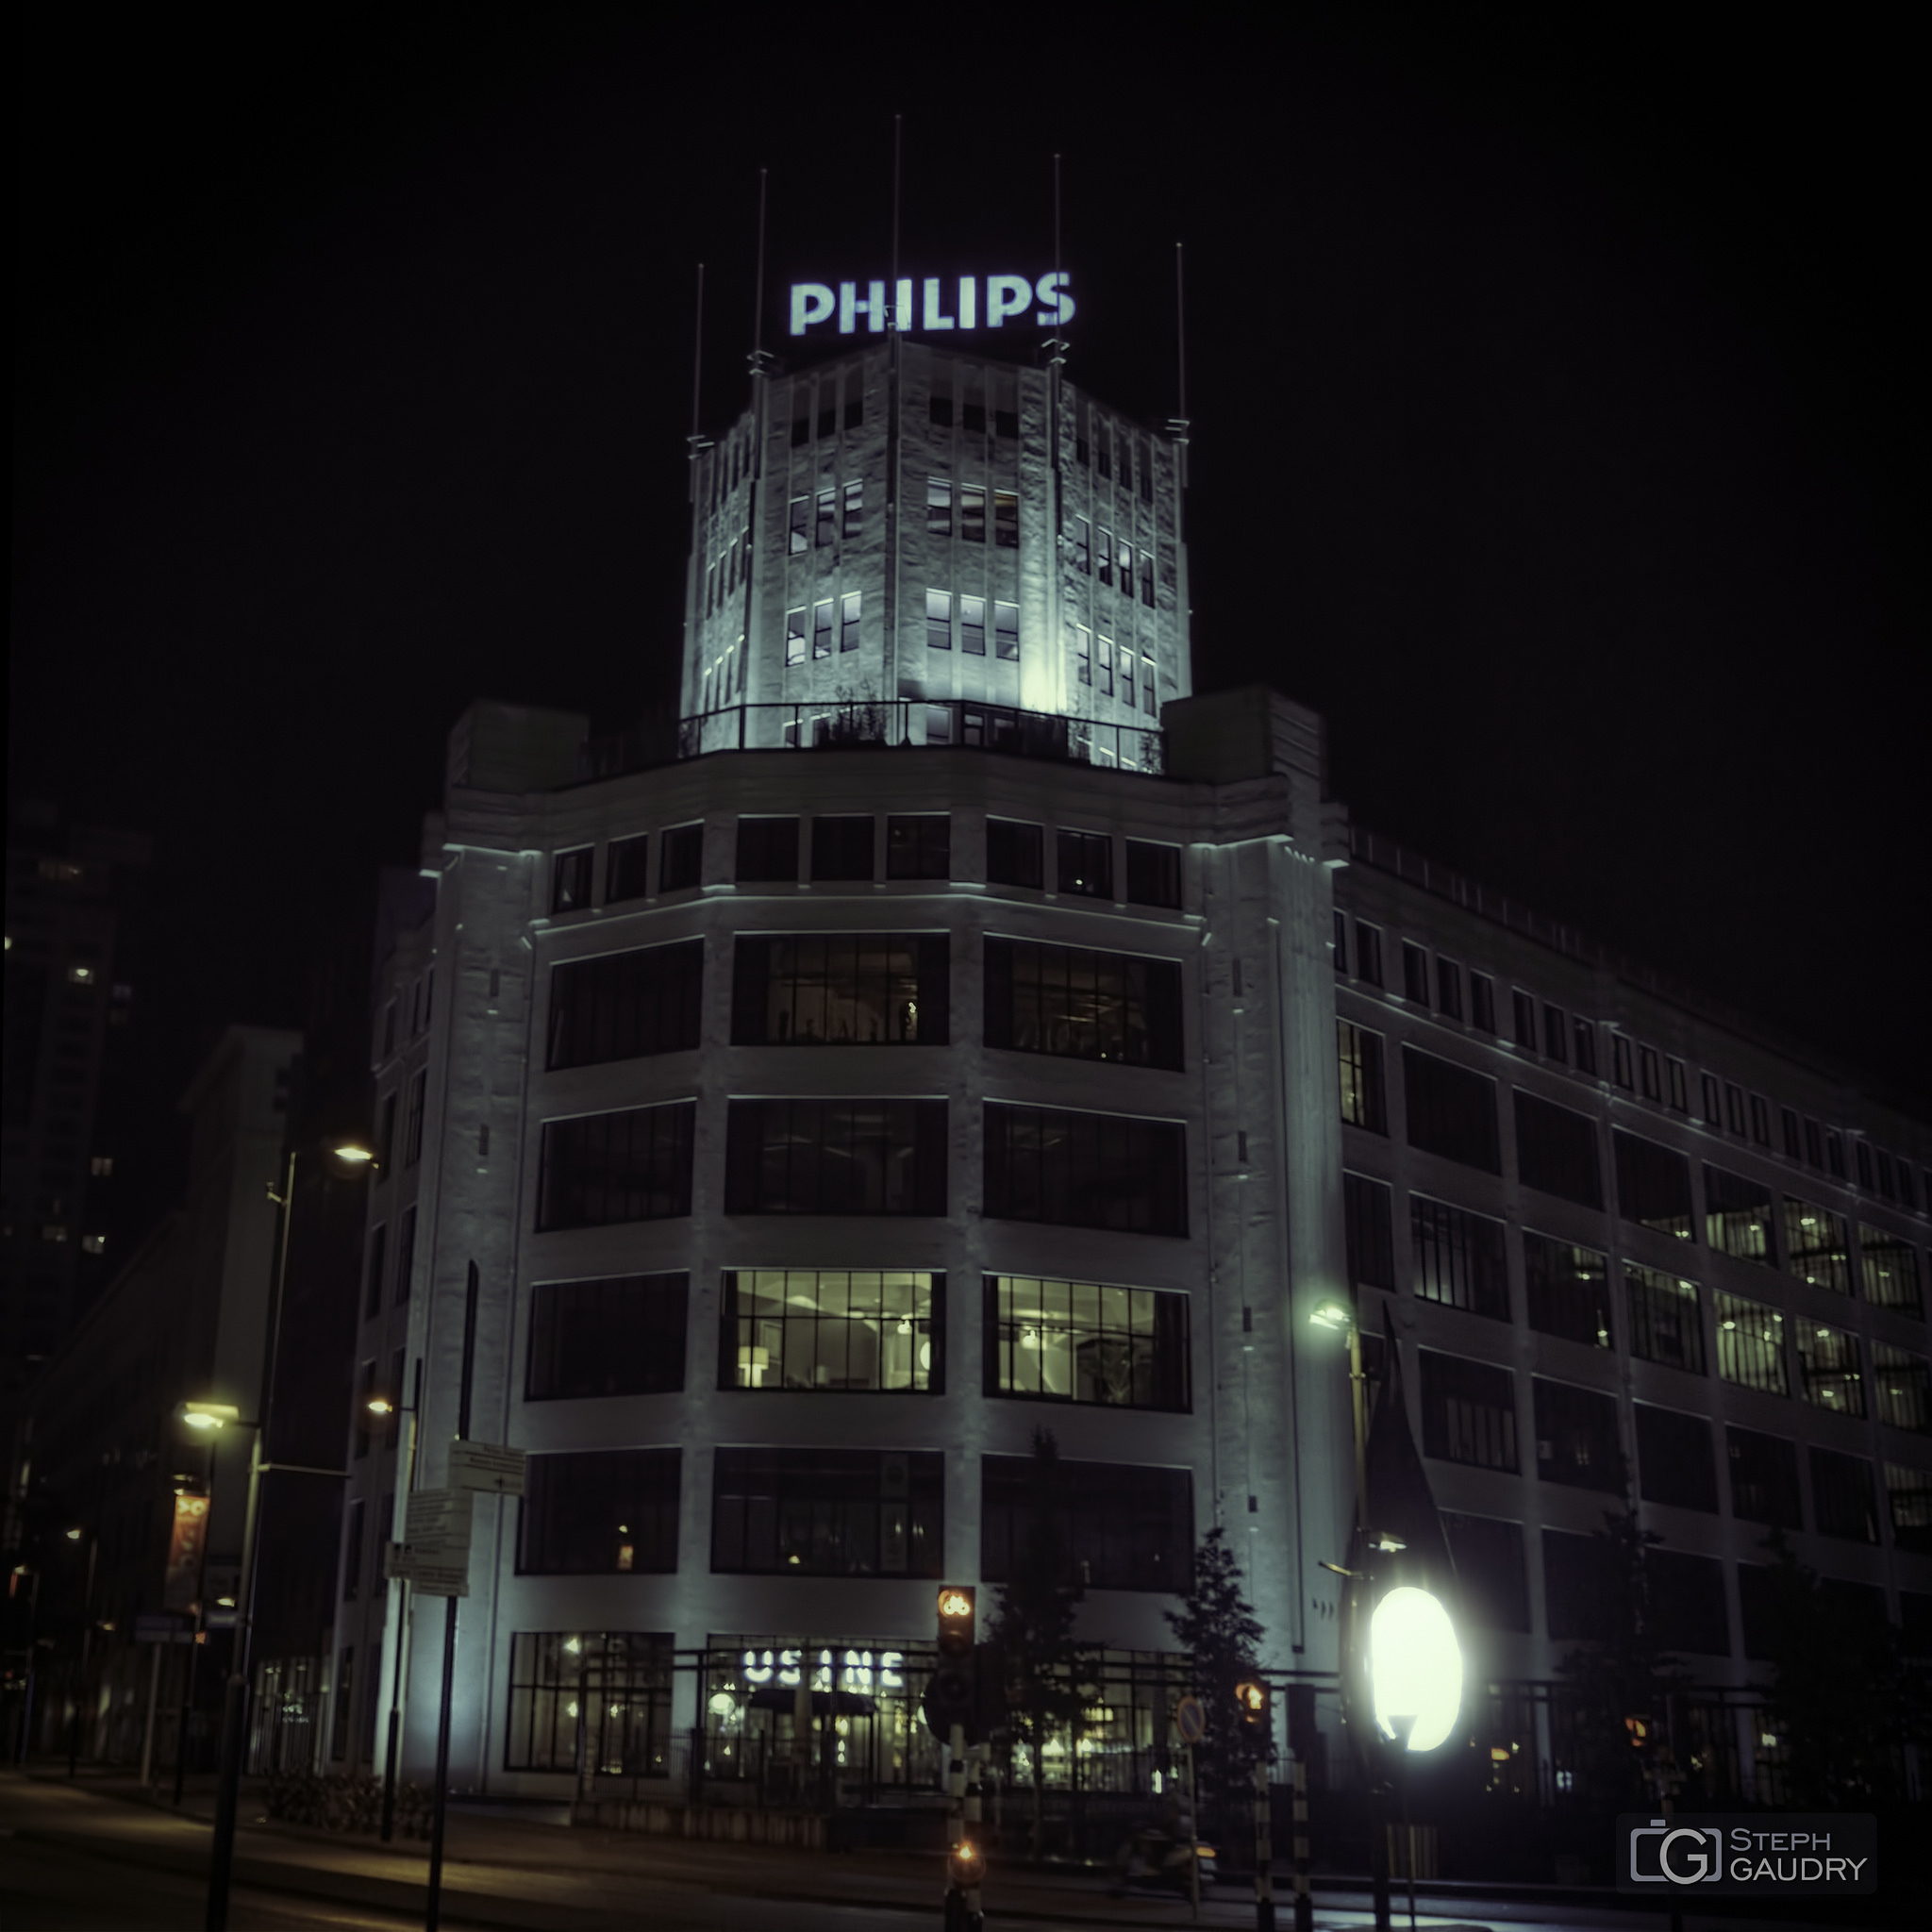 De Philips Toren [Click to start slideshow]